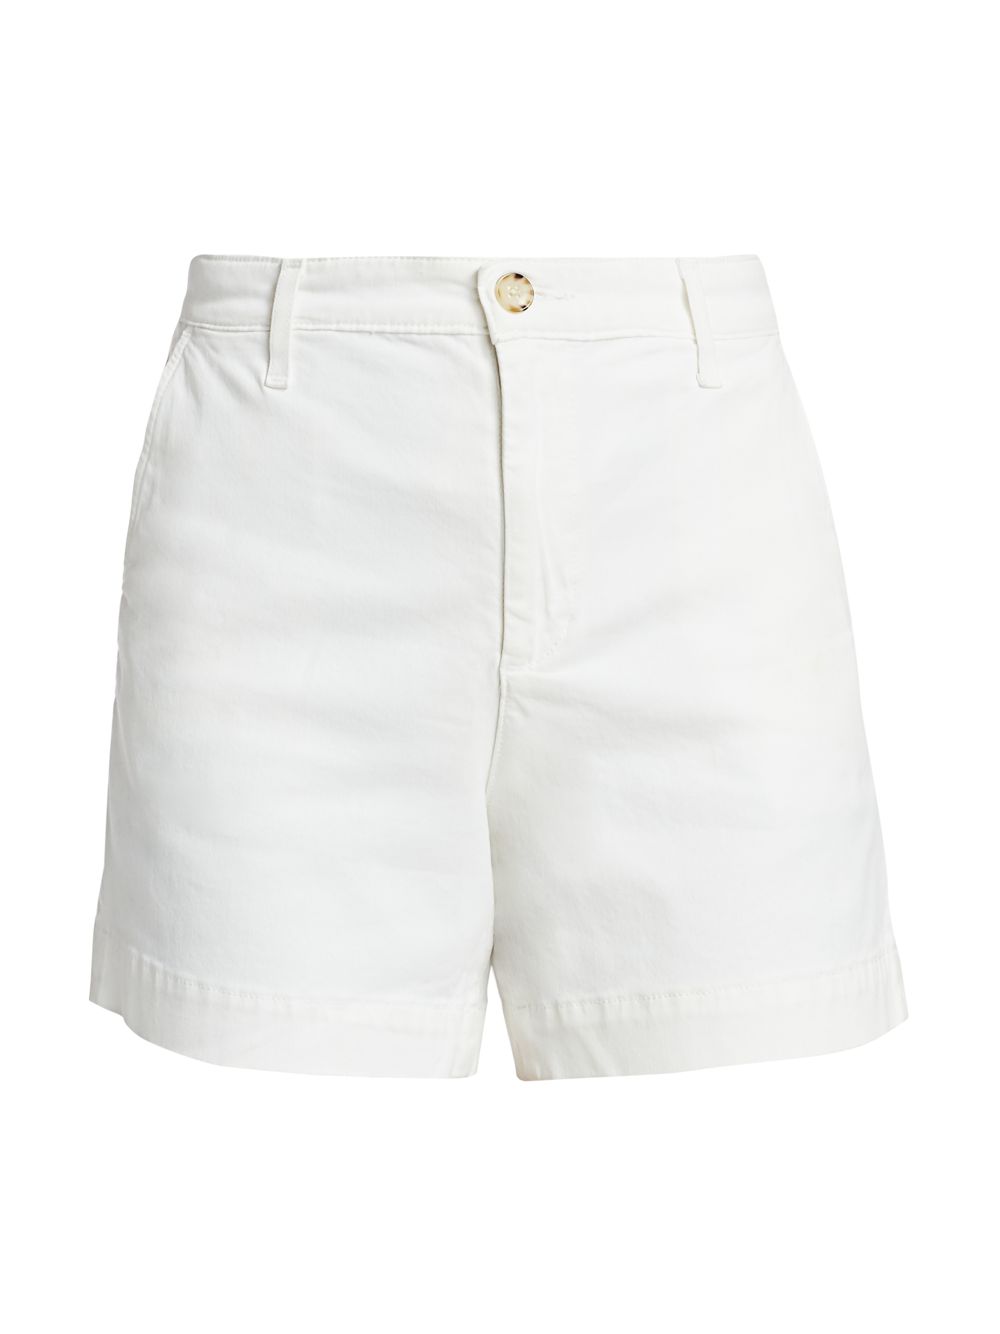 Приталенные шорты Caden AG Jeans, белый